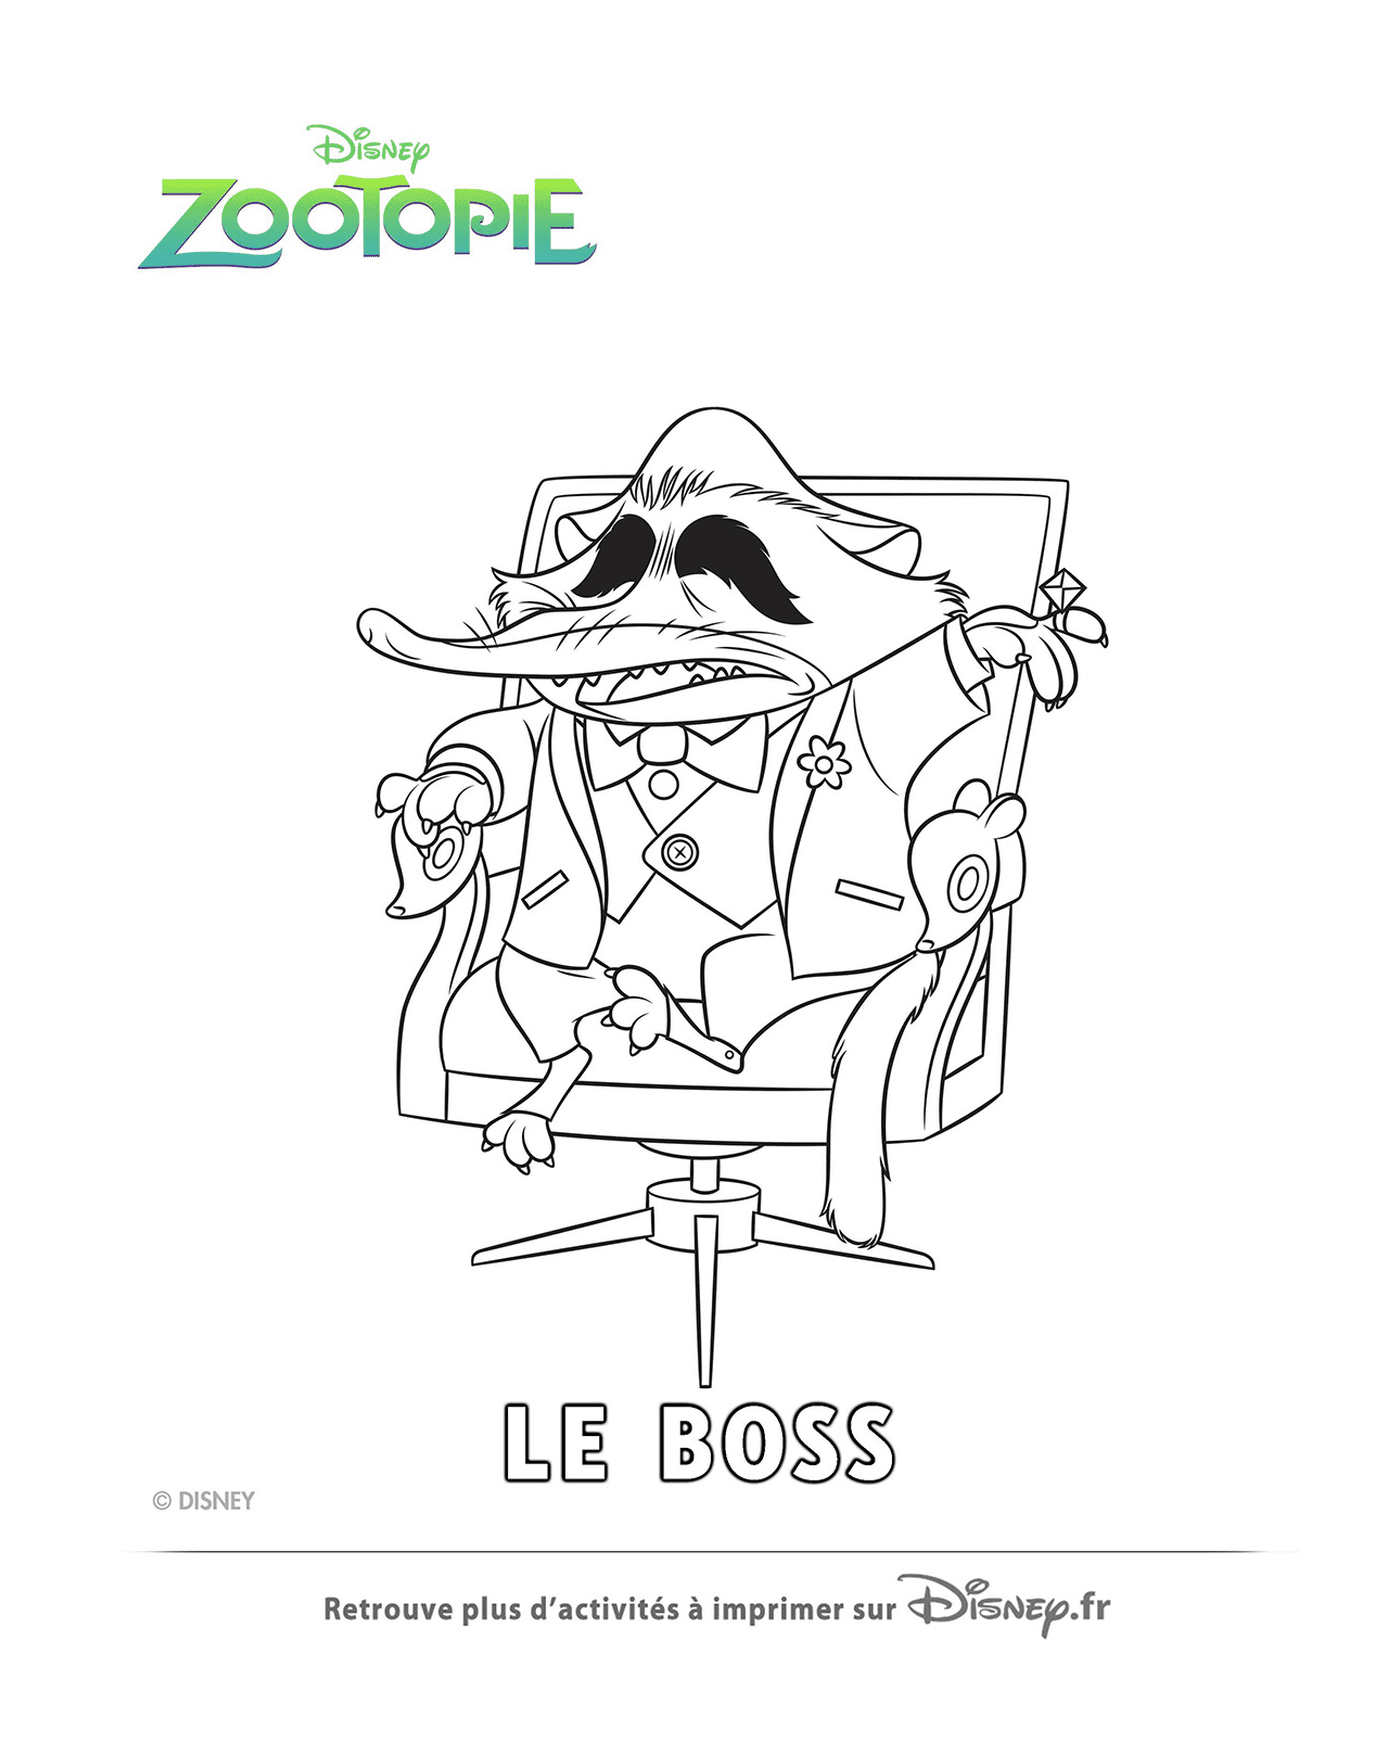   Mr. Big, le parrain de la mafia de Zootopie 